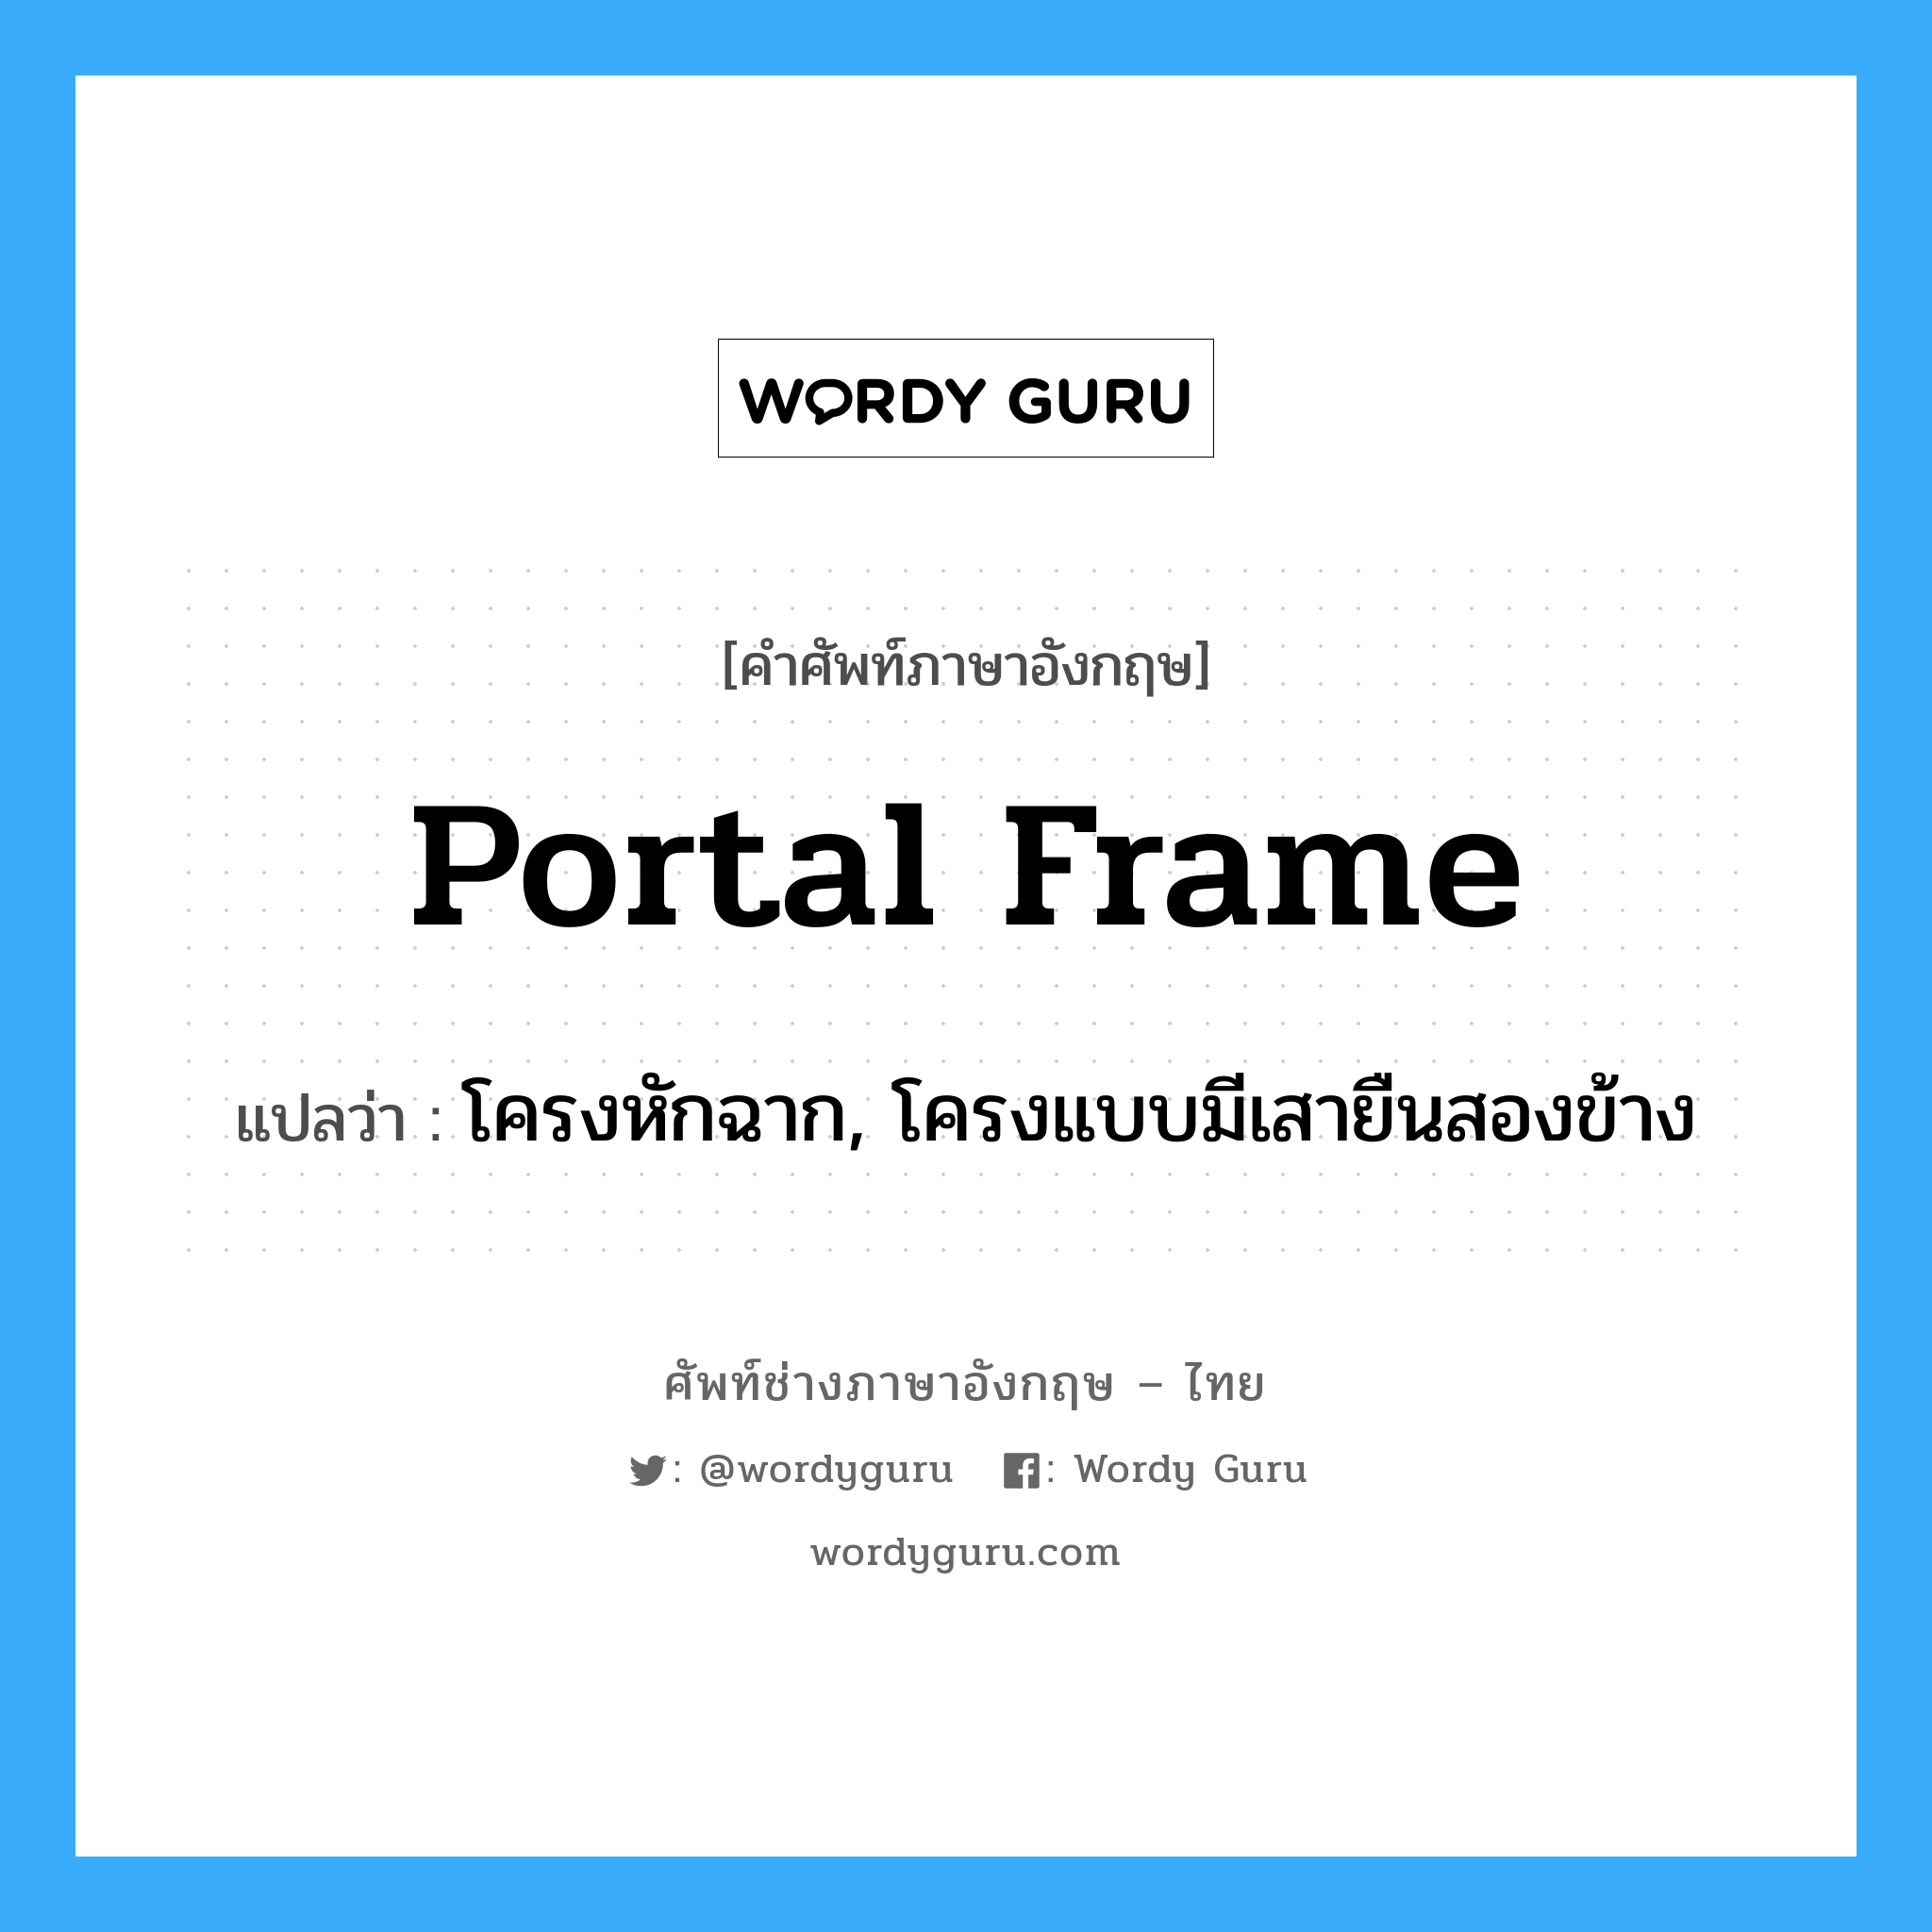 โครงหักฉาก, โครงแบบมีเสายืนสองข้าง ภาษาอังกฤษ?, คำศัพท์ช่างภาษาอังกฤษ - ไทย โครงหักฉาก, โครงแบบมีเสายืนสองข้าง คำศัพท์ภาษาอังกฤษ โครงหักฉาก, โครงแบบมีเสายืนสองข้าง แปลว่า portal frame